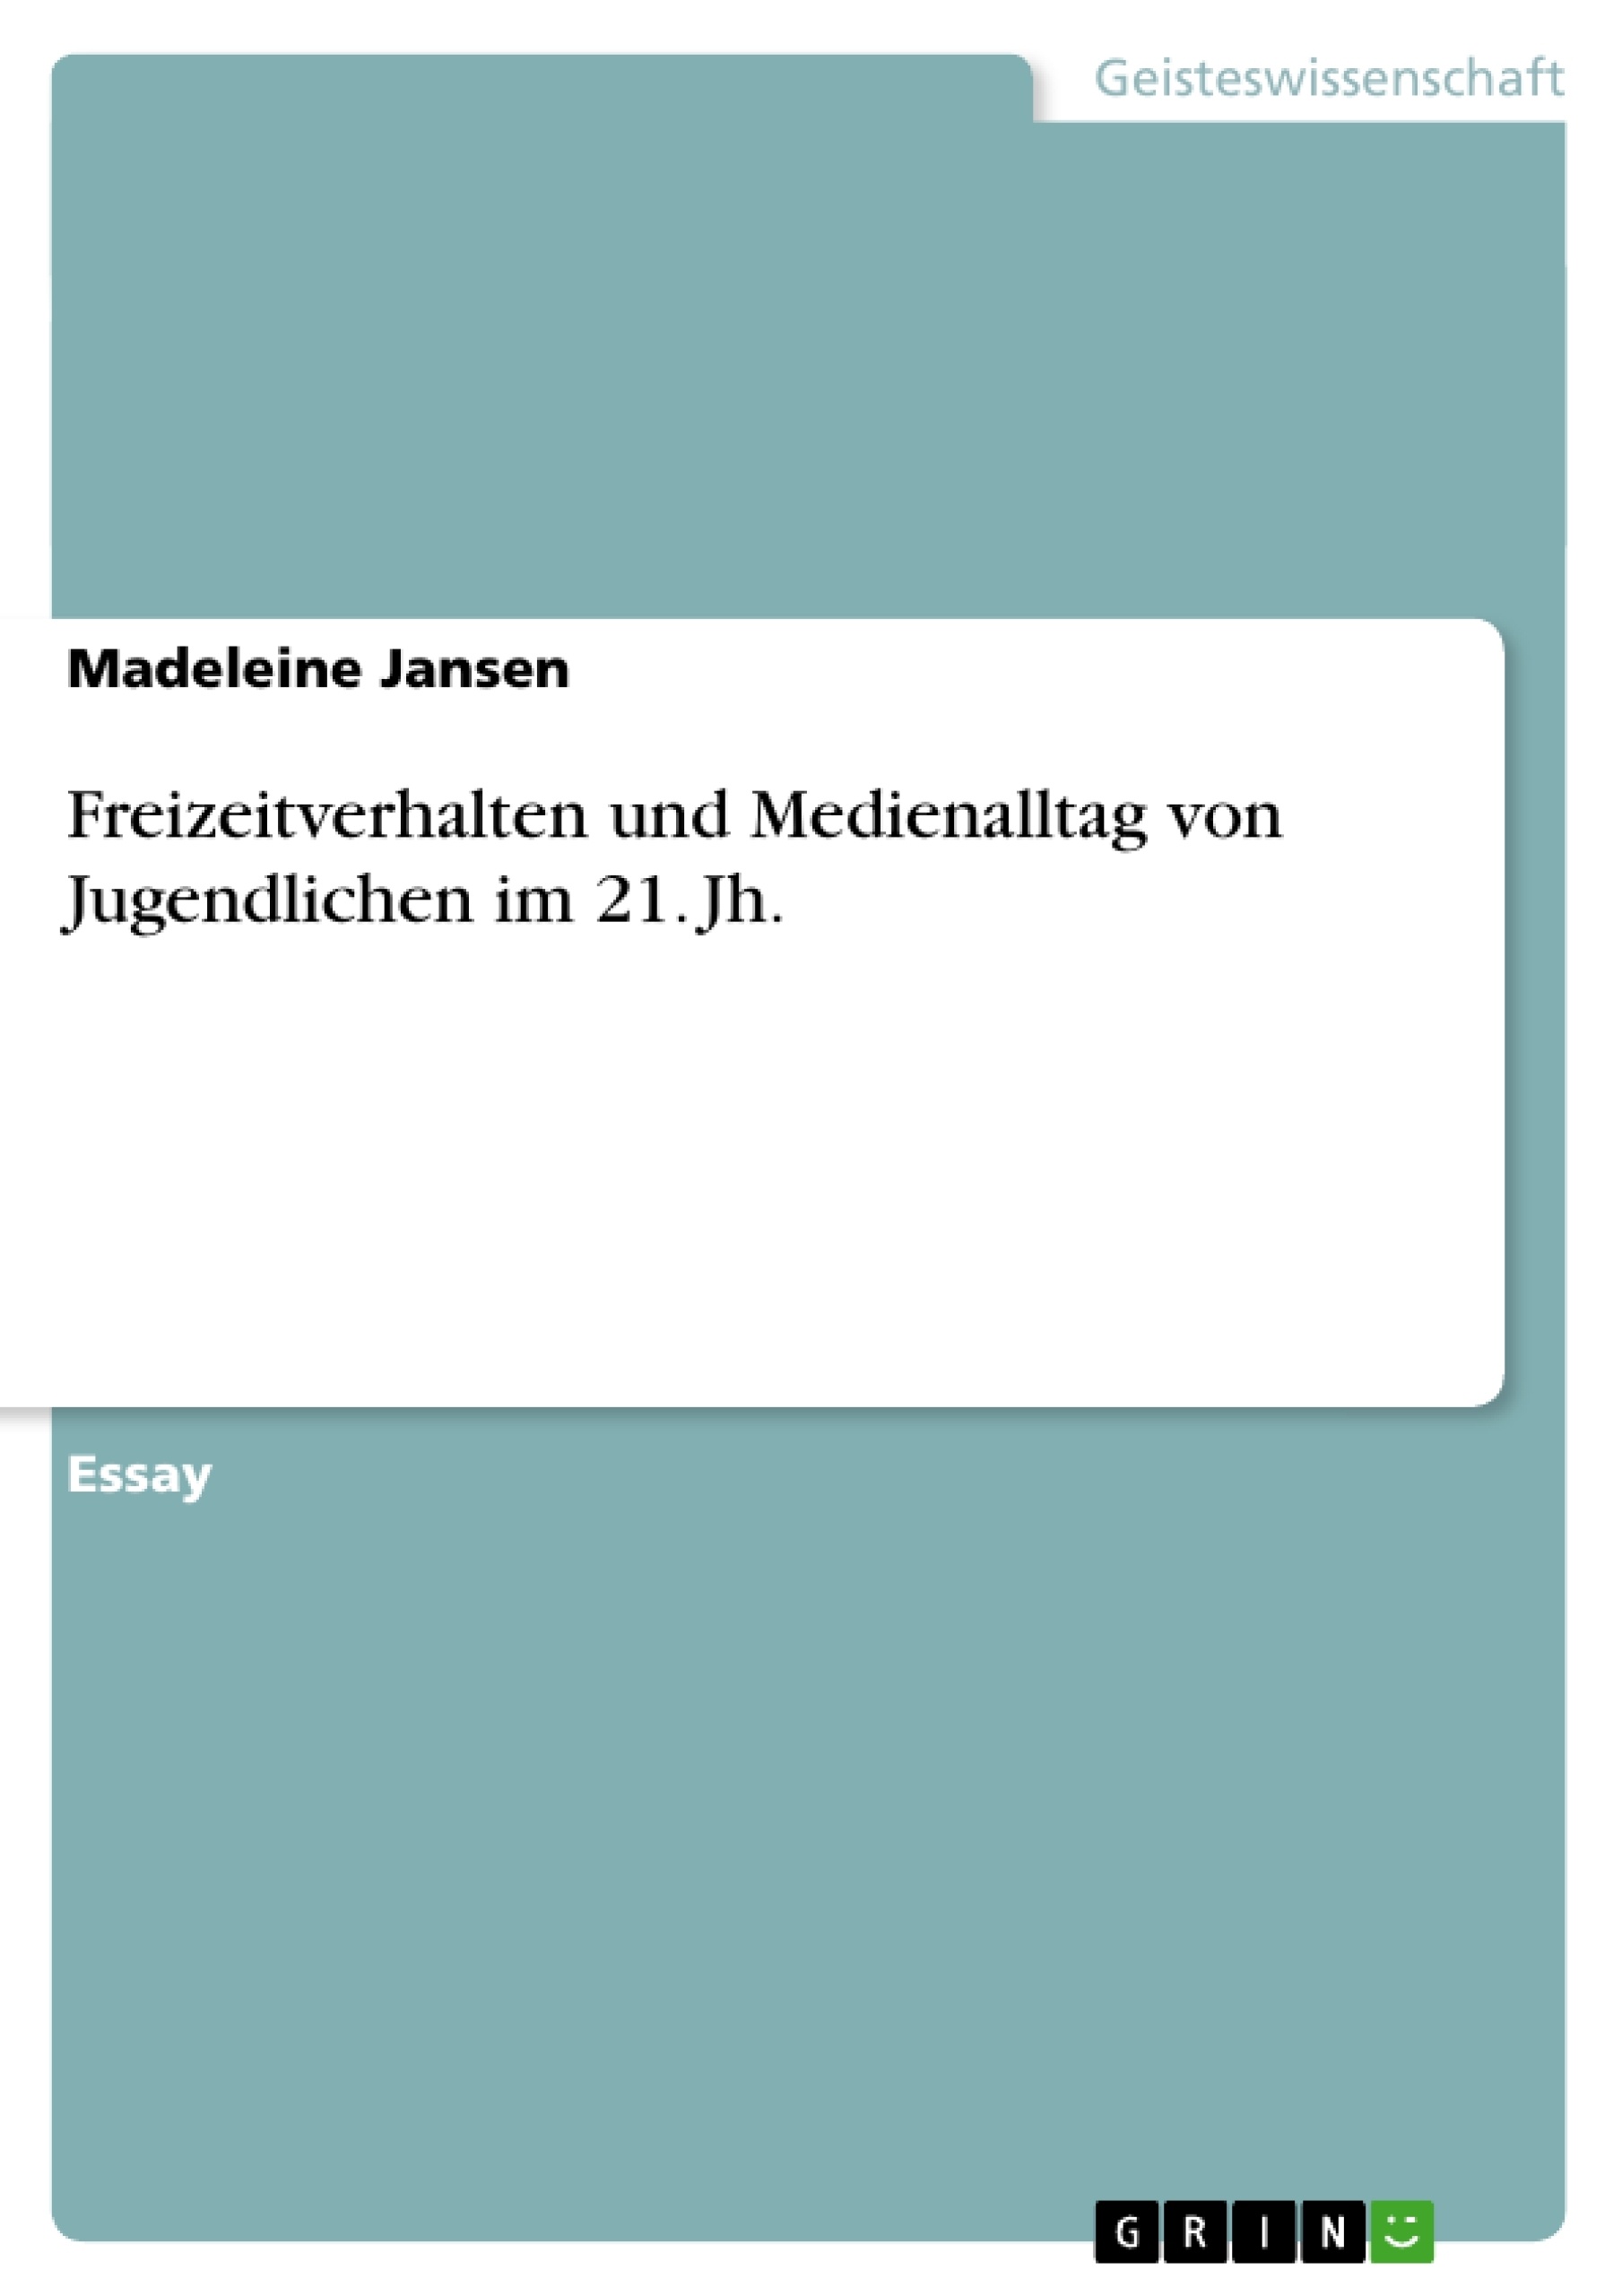 Title: Freizeitverhalten und Medienalltag von Jugendlichen im 21. Jh.